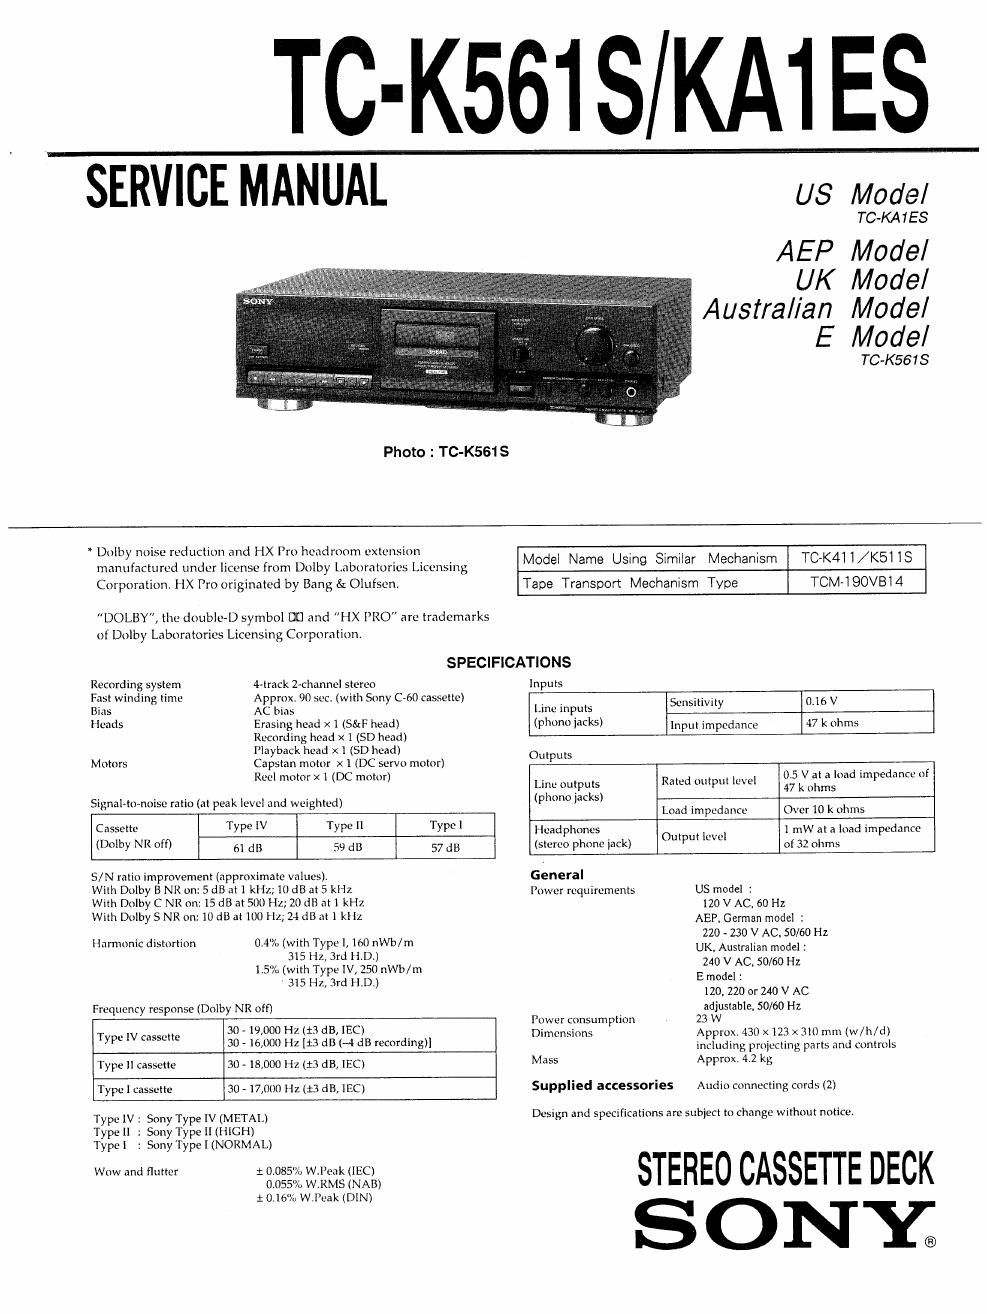 sony tc k 561s service manual